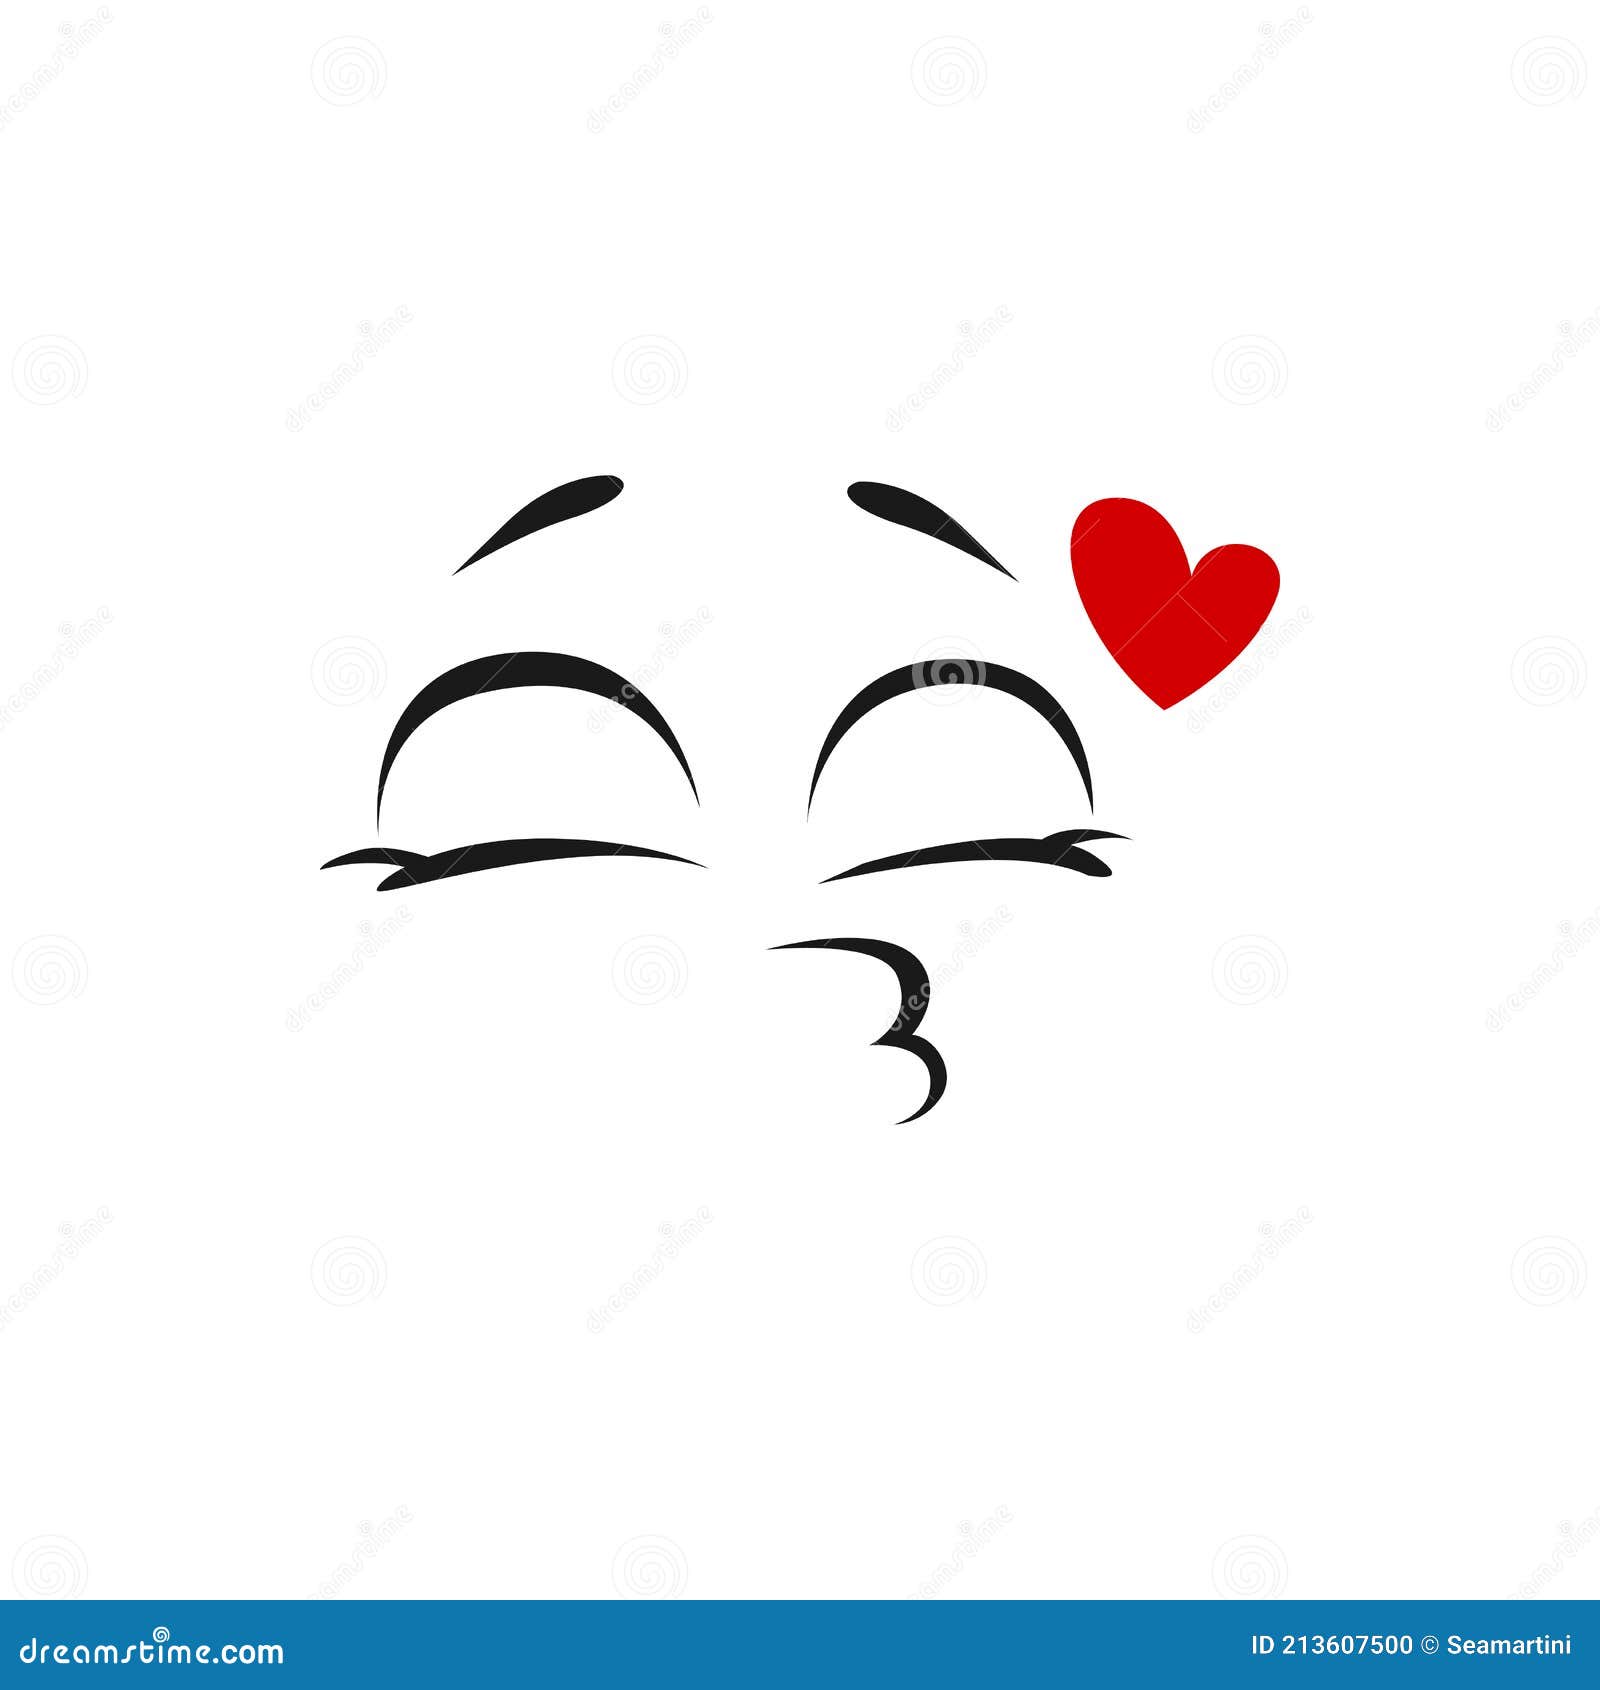 愛表情符號矢量和吻, 愛情表情png, 愛情緒, 戀愛中的表情符號向量圖案素材免費下載，PNG，EPS和AI素材下載 - Pngtree